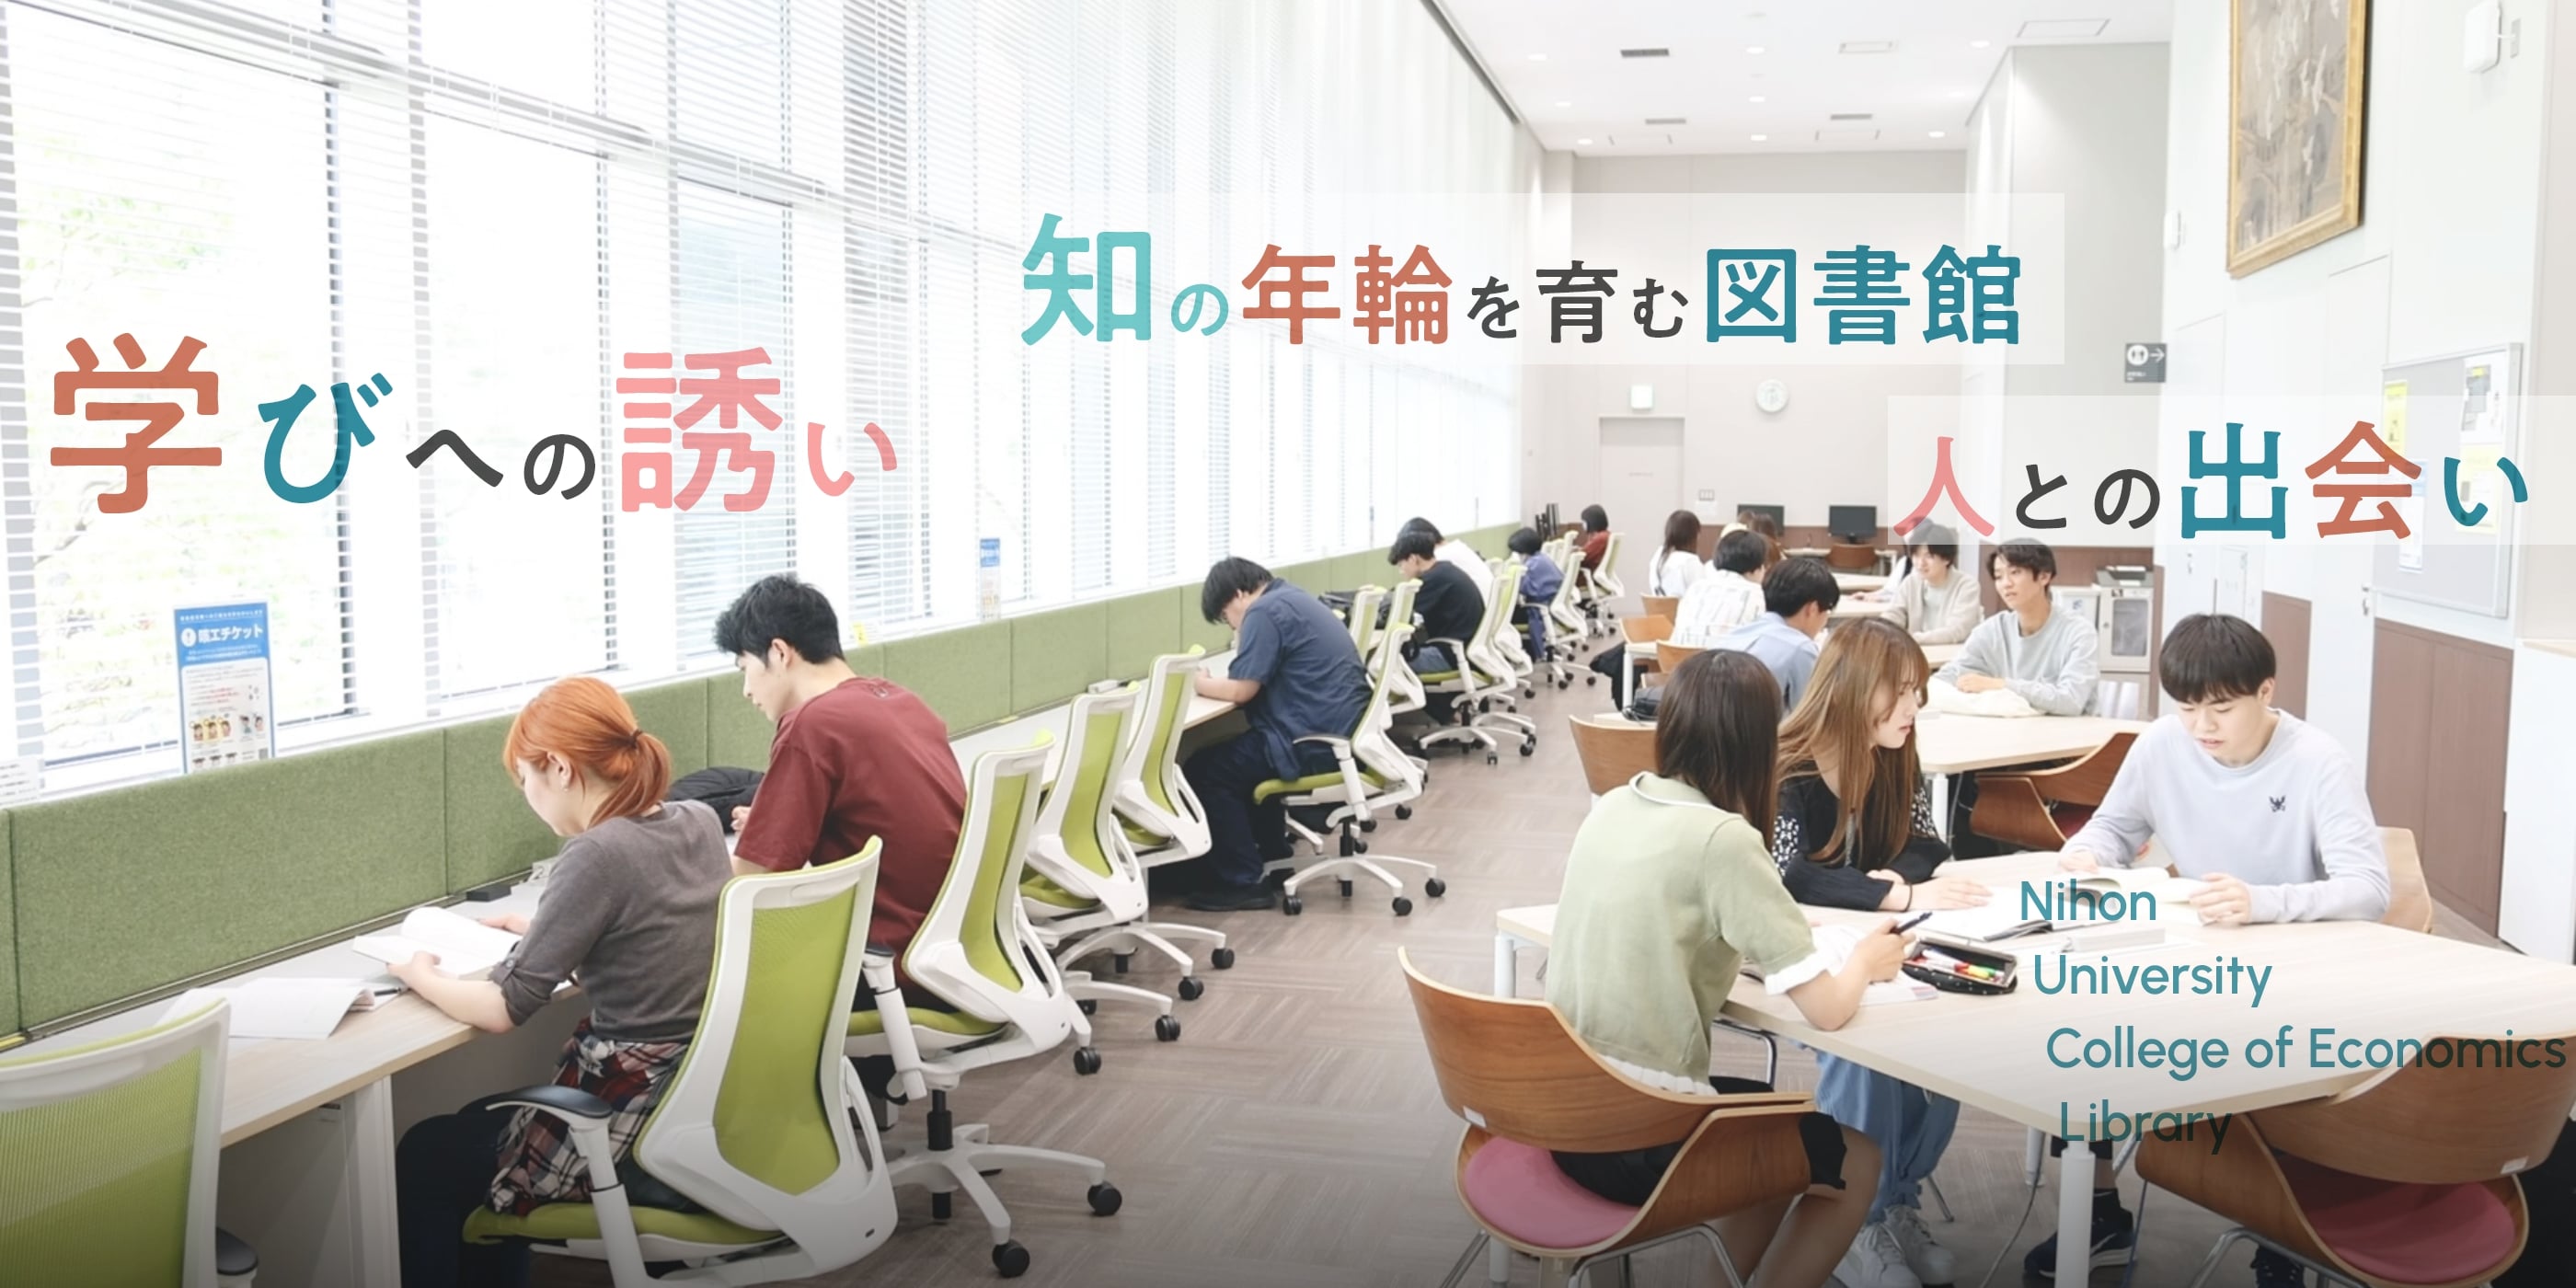 知の年輪を育む図書館 学びへの誘い 人との出会い Nihon University Library